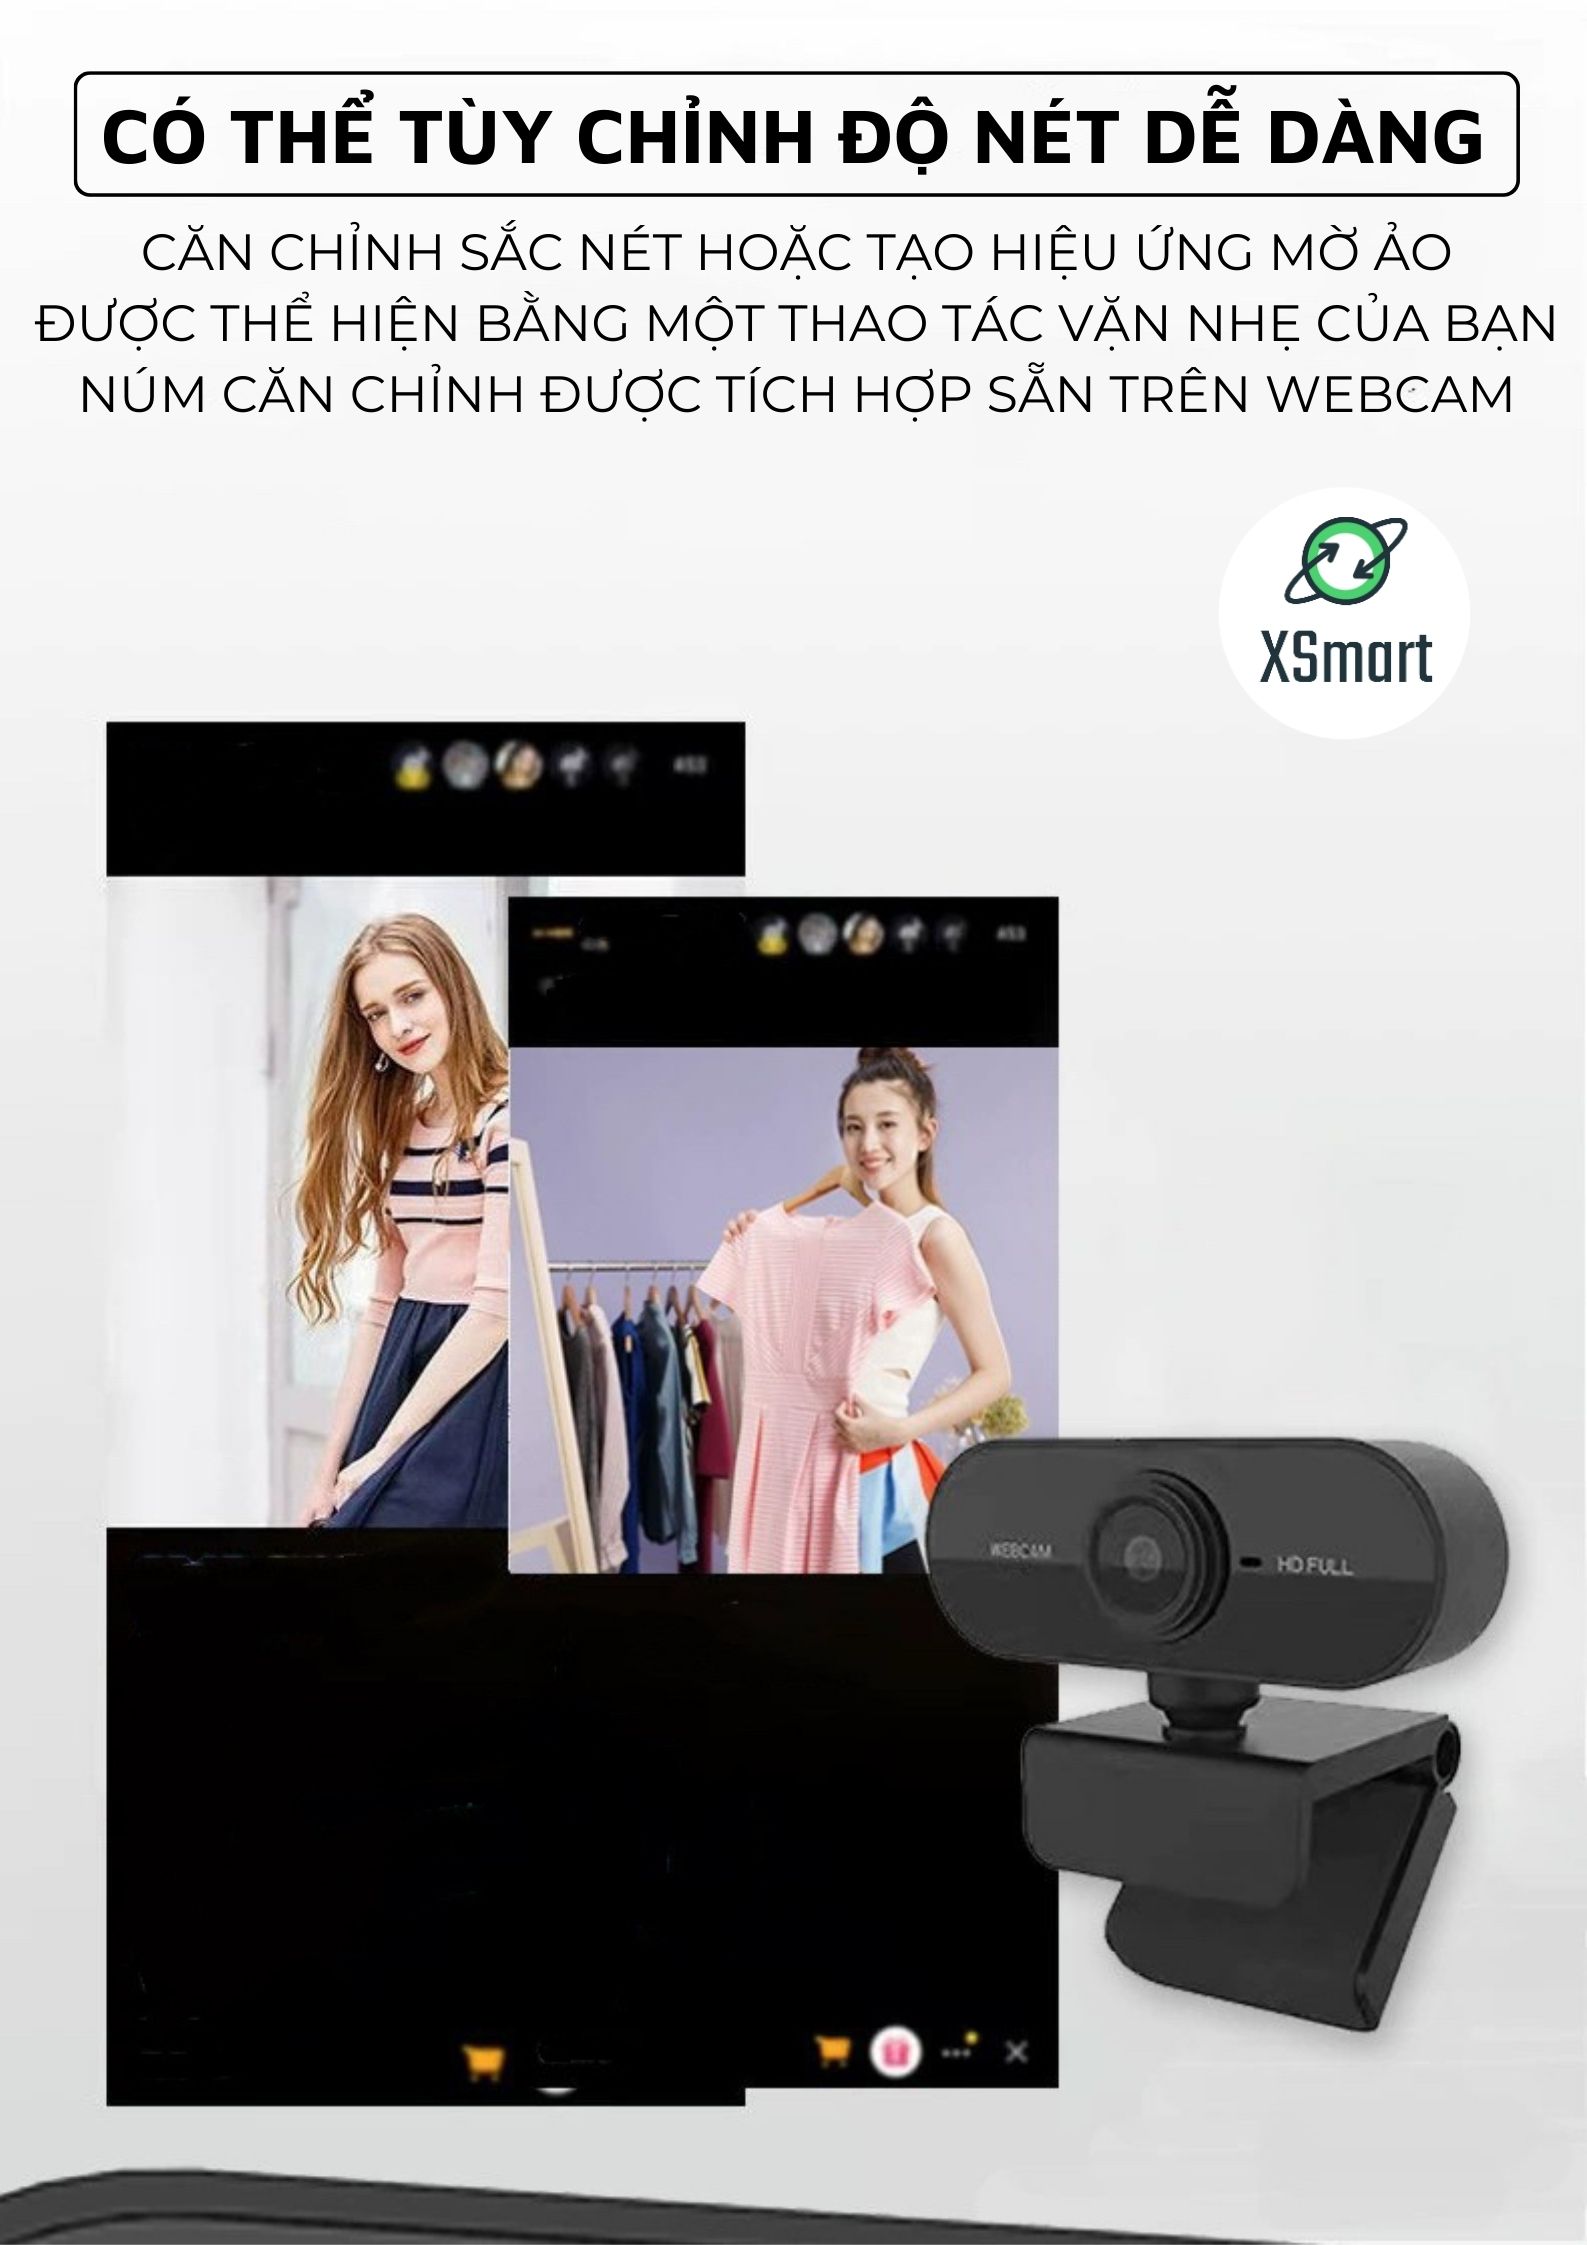 Webcam Máy Tính Laptop Q8 Chất Lượng Full HD Hình Ảnh Sắc Nét Camera Video Mượt Mà 30FPS Cho Livestream, Học Trực Tuyến-Hàng Chính Hãng